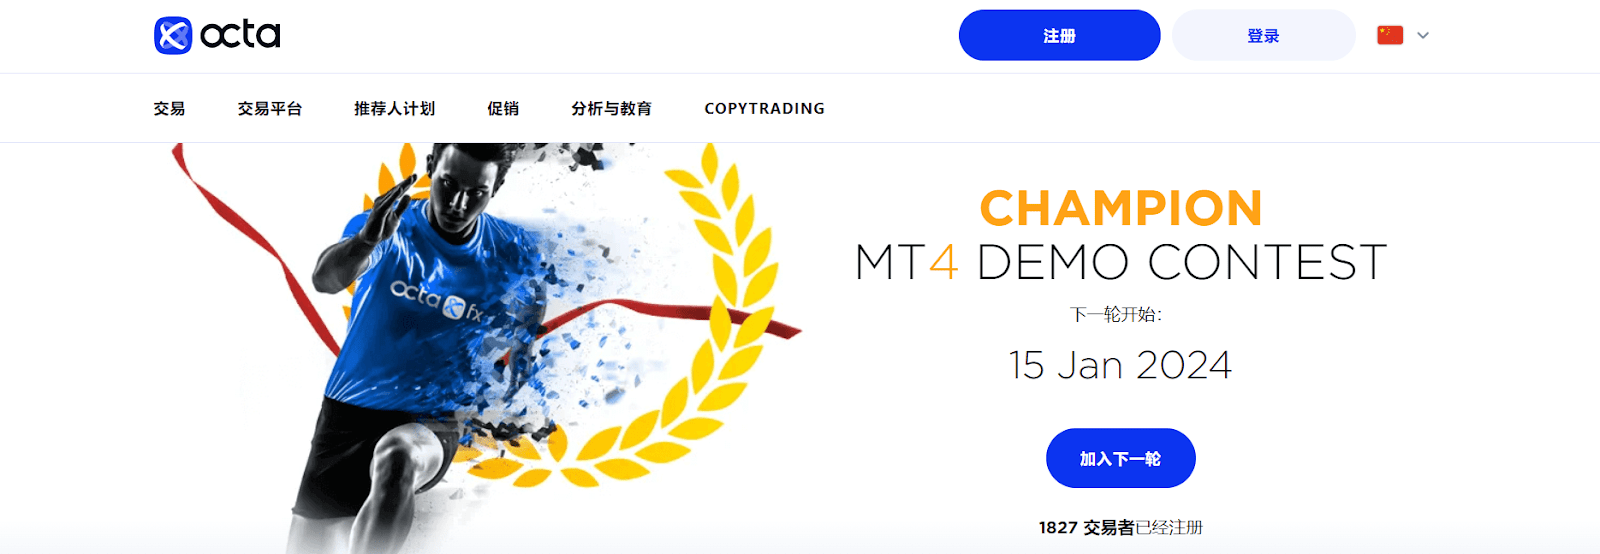 OctaFX 奖励 - MT4 模拟账户的竞赛